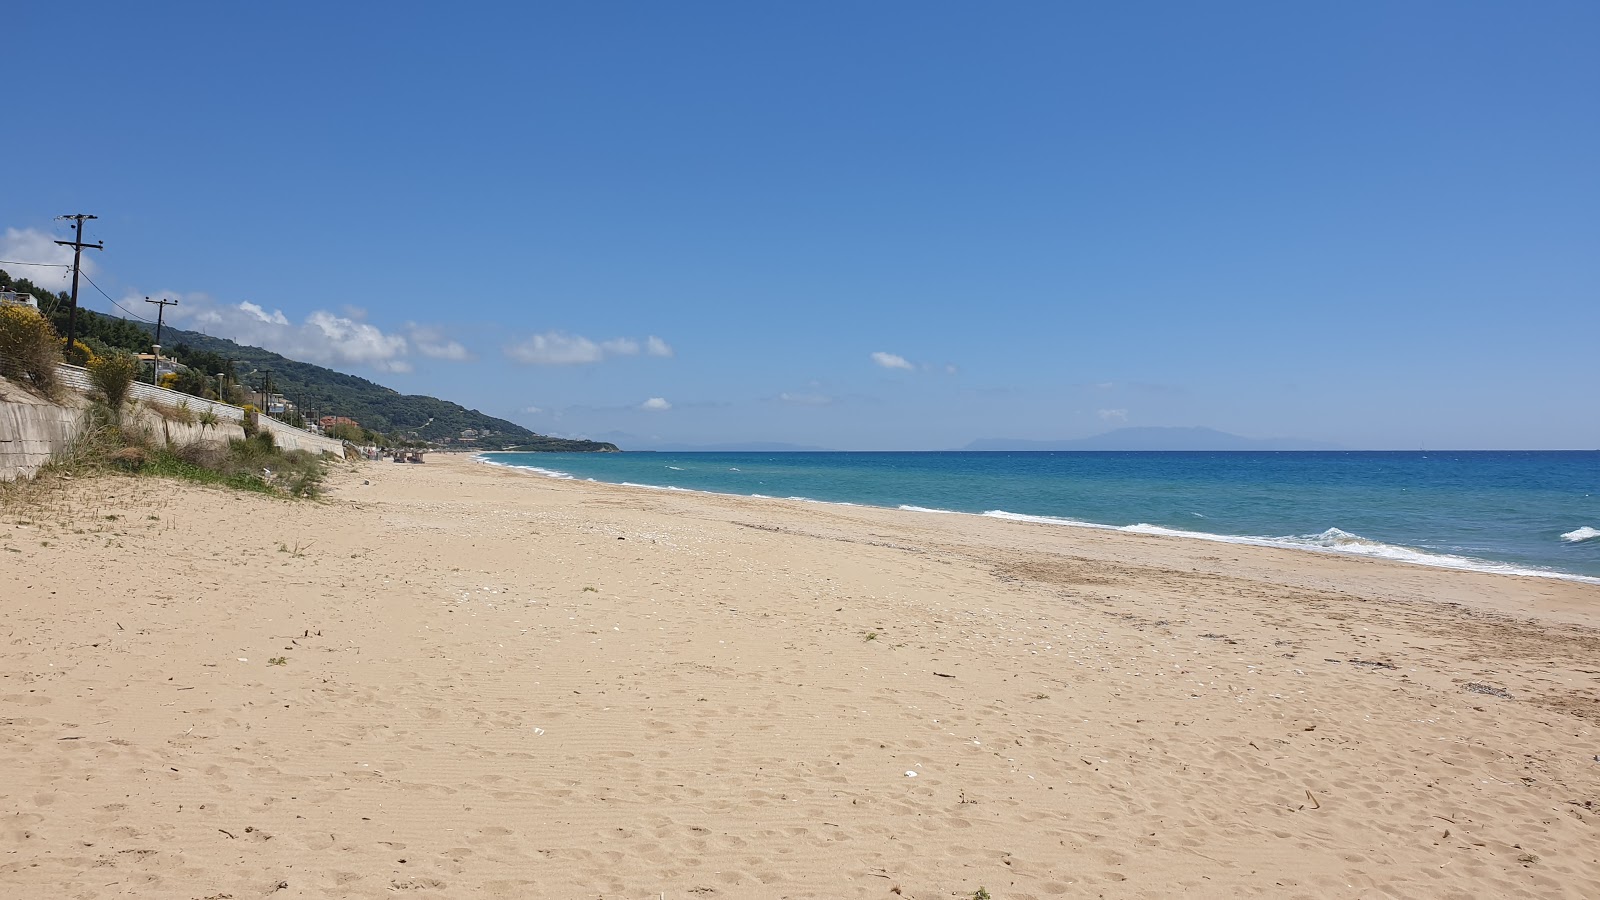 Foto de loutsas beach - lugar popular entre los conocedores del relax